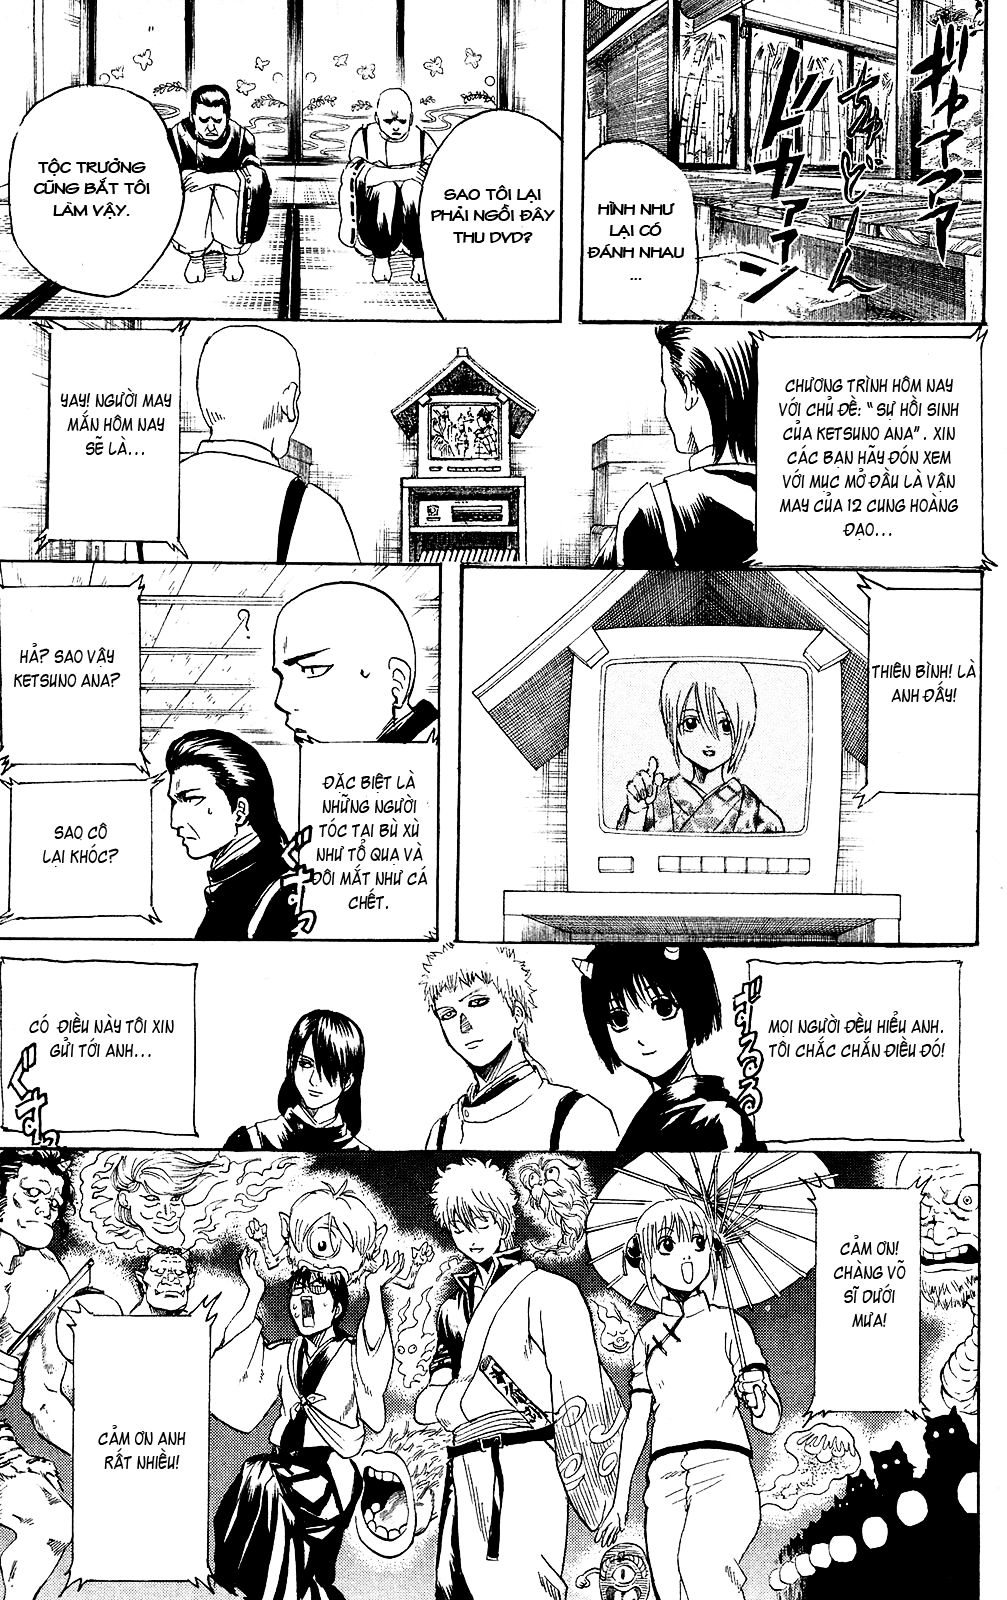 Gintama chapter 289 trang 20